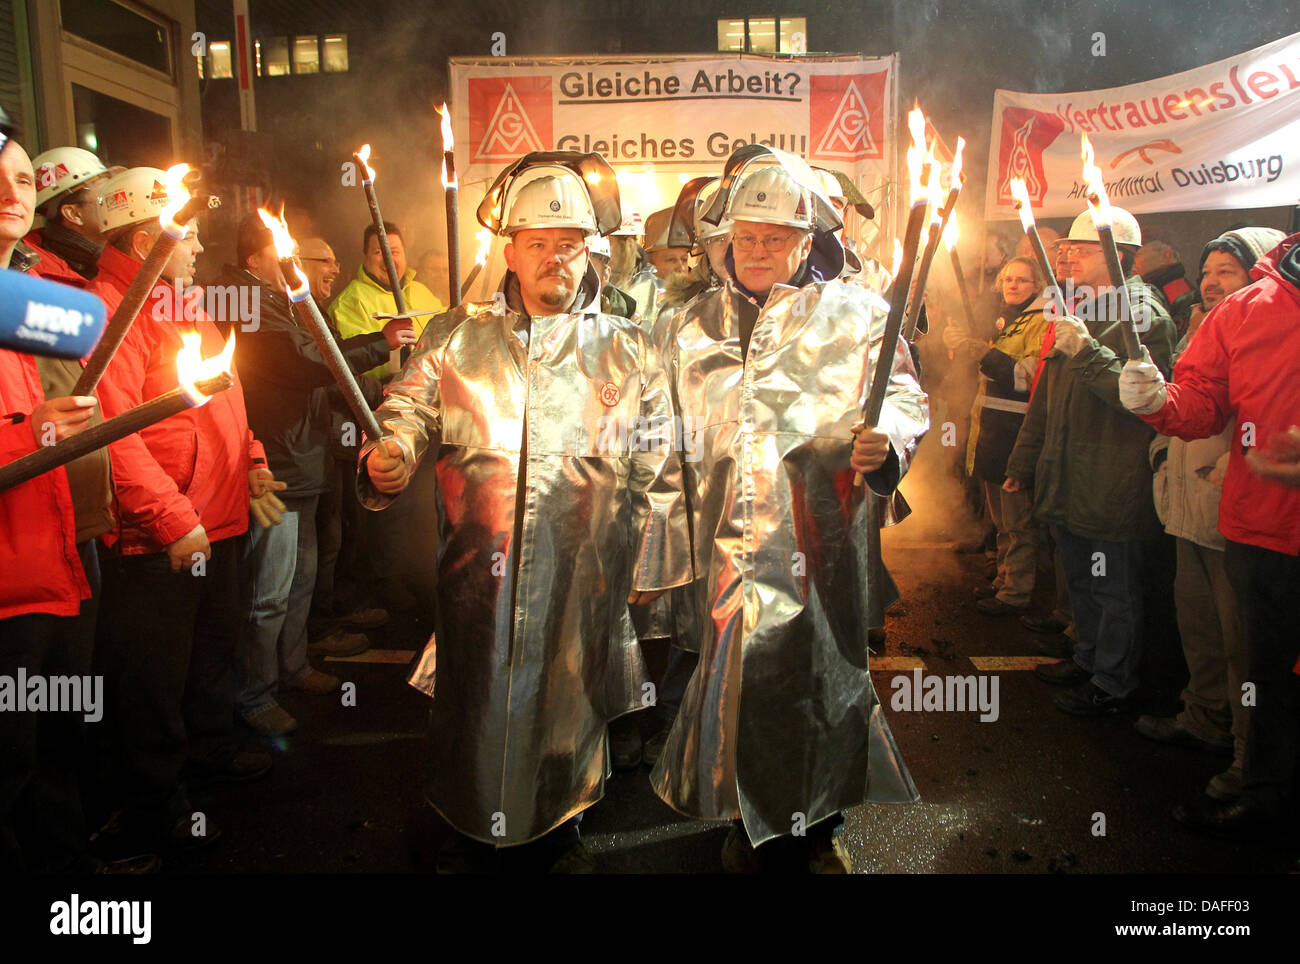 Stahlarbeiter der ThyssenKrupp AG demonstrieren am Donnerstag (24.02.2011) vor dem Tor 1 in Duisburg. Sie beteiligen sich am bundesweiten Aktionstagder IG Metall zum Thema Leiharbeit.   Foto: Roland Weihrauch dpa/lnw Stock Photo